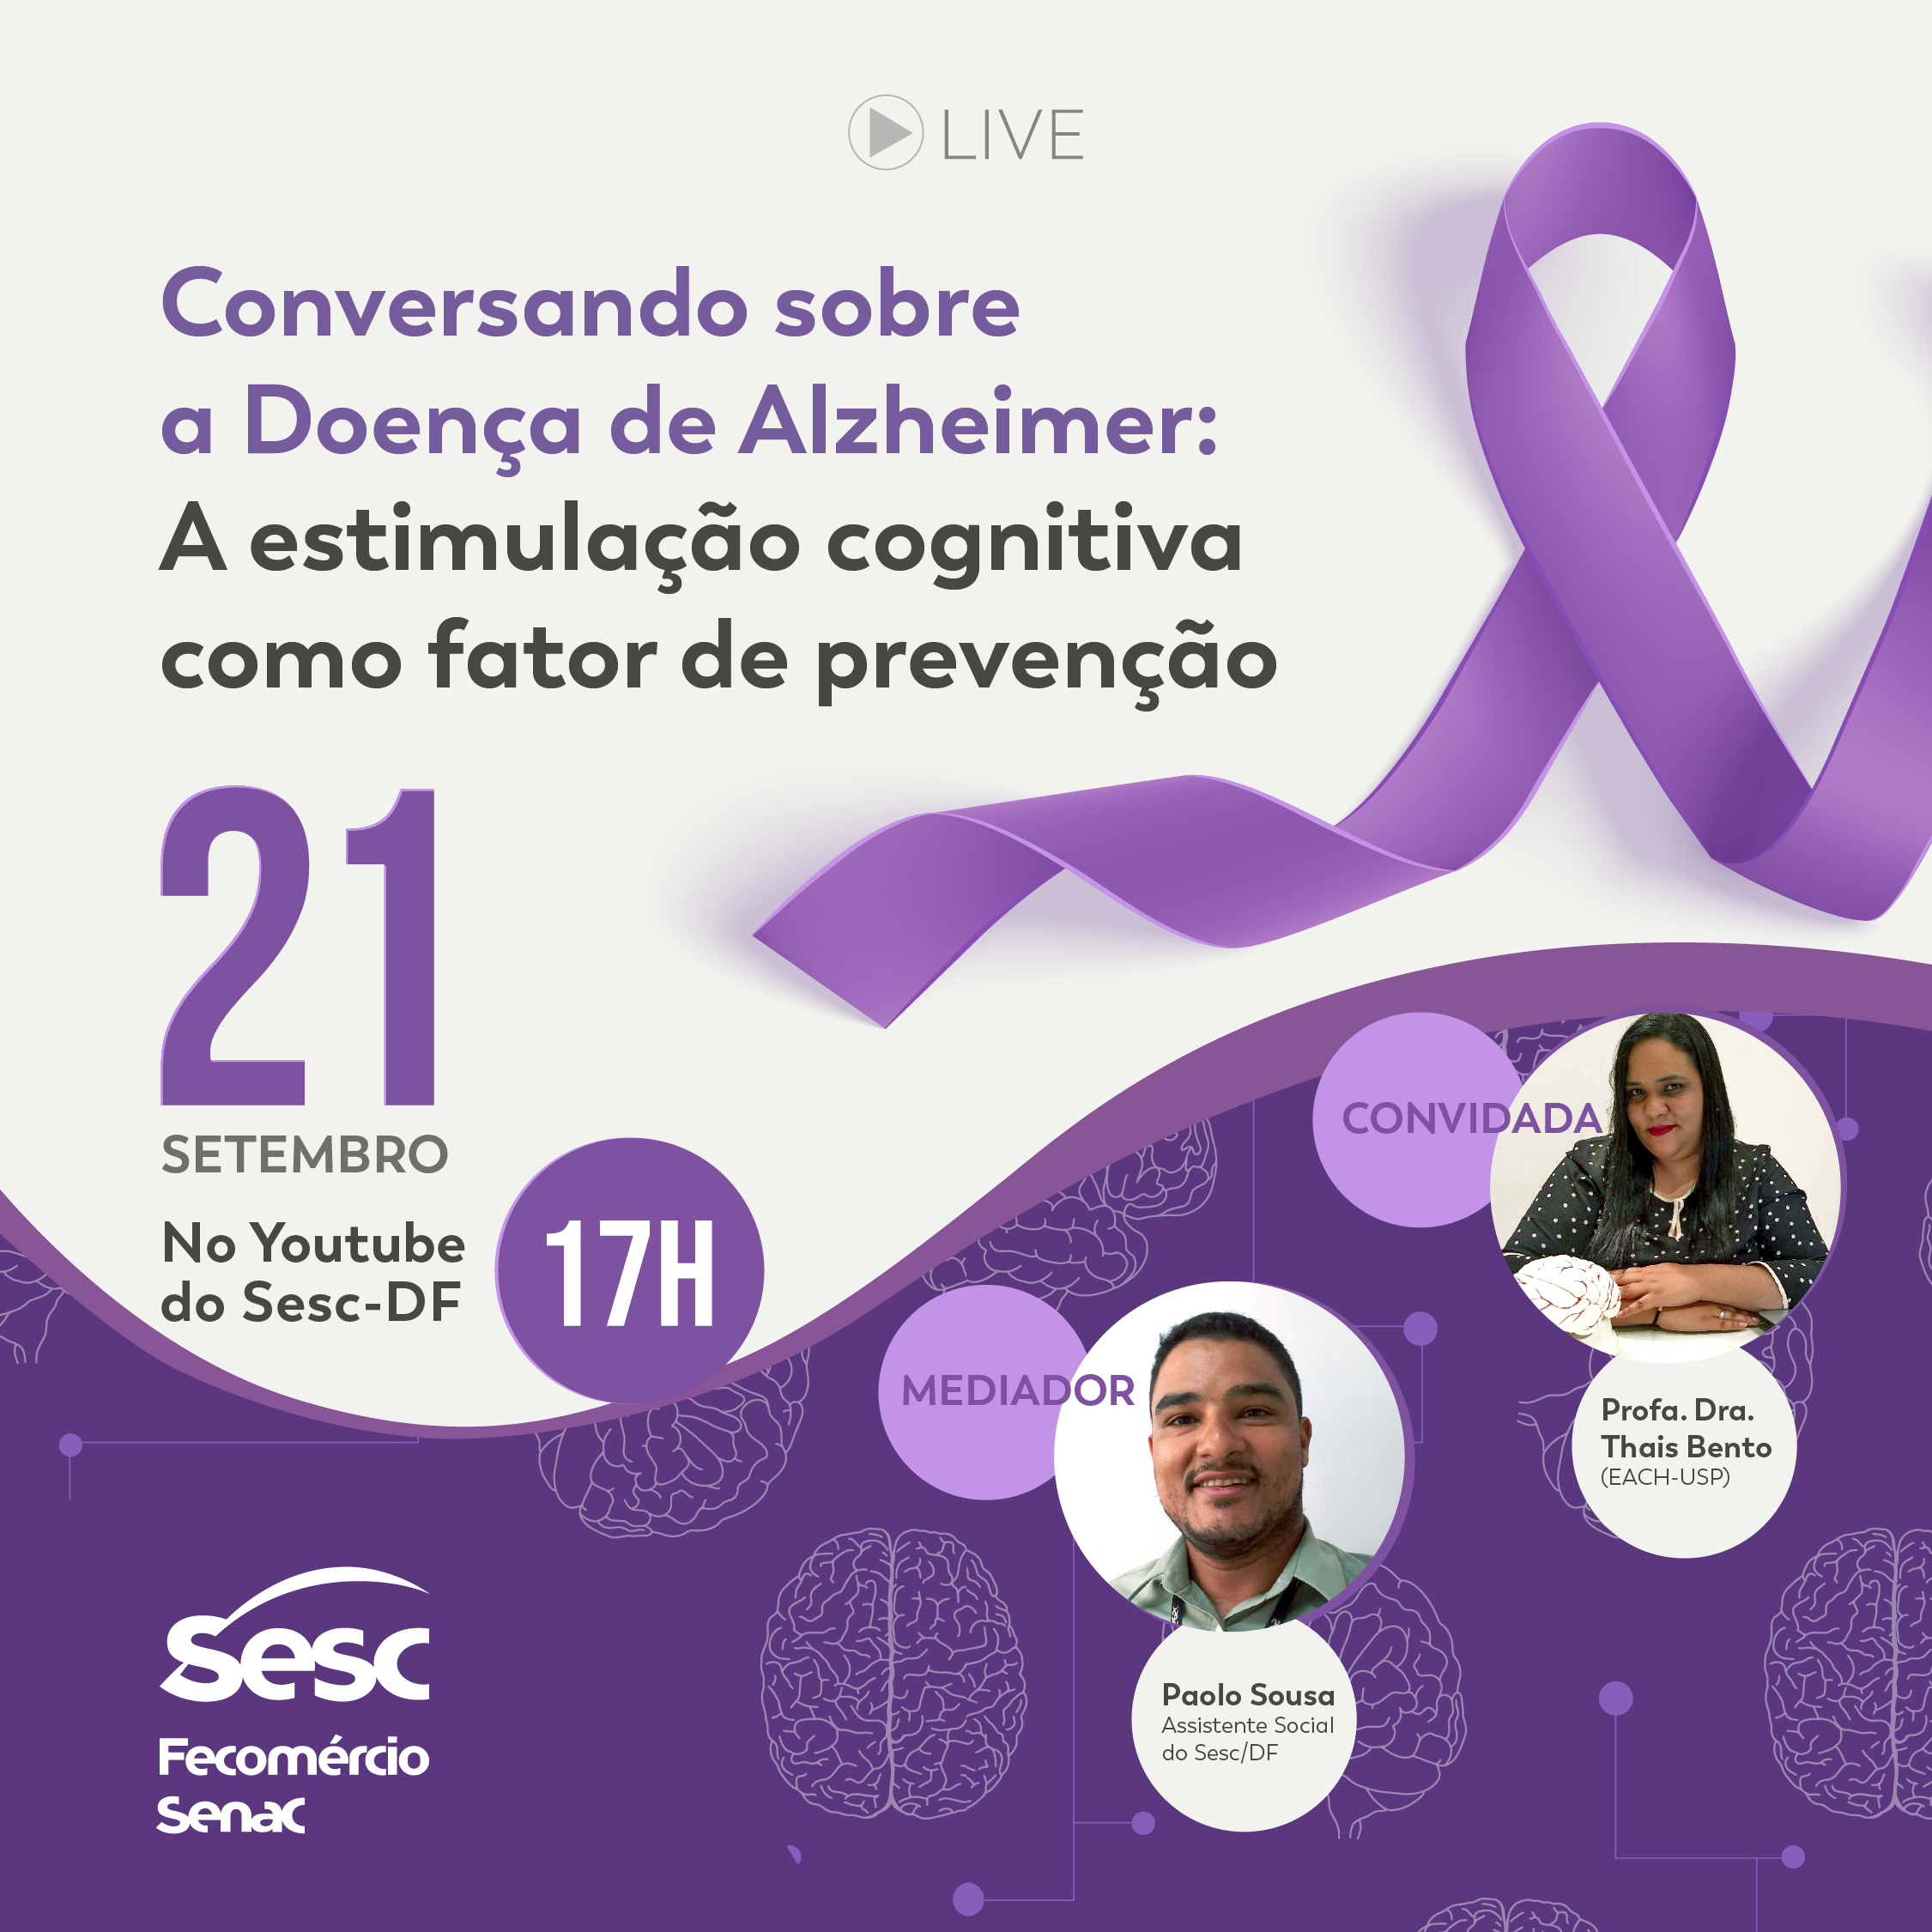 LIVE - Conversando sobre a doença de alzheimer: a estimulação cognitiva como fator de prevenção